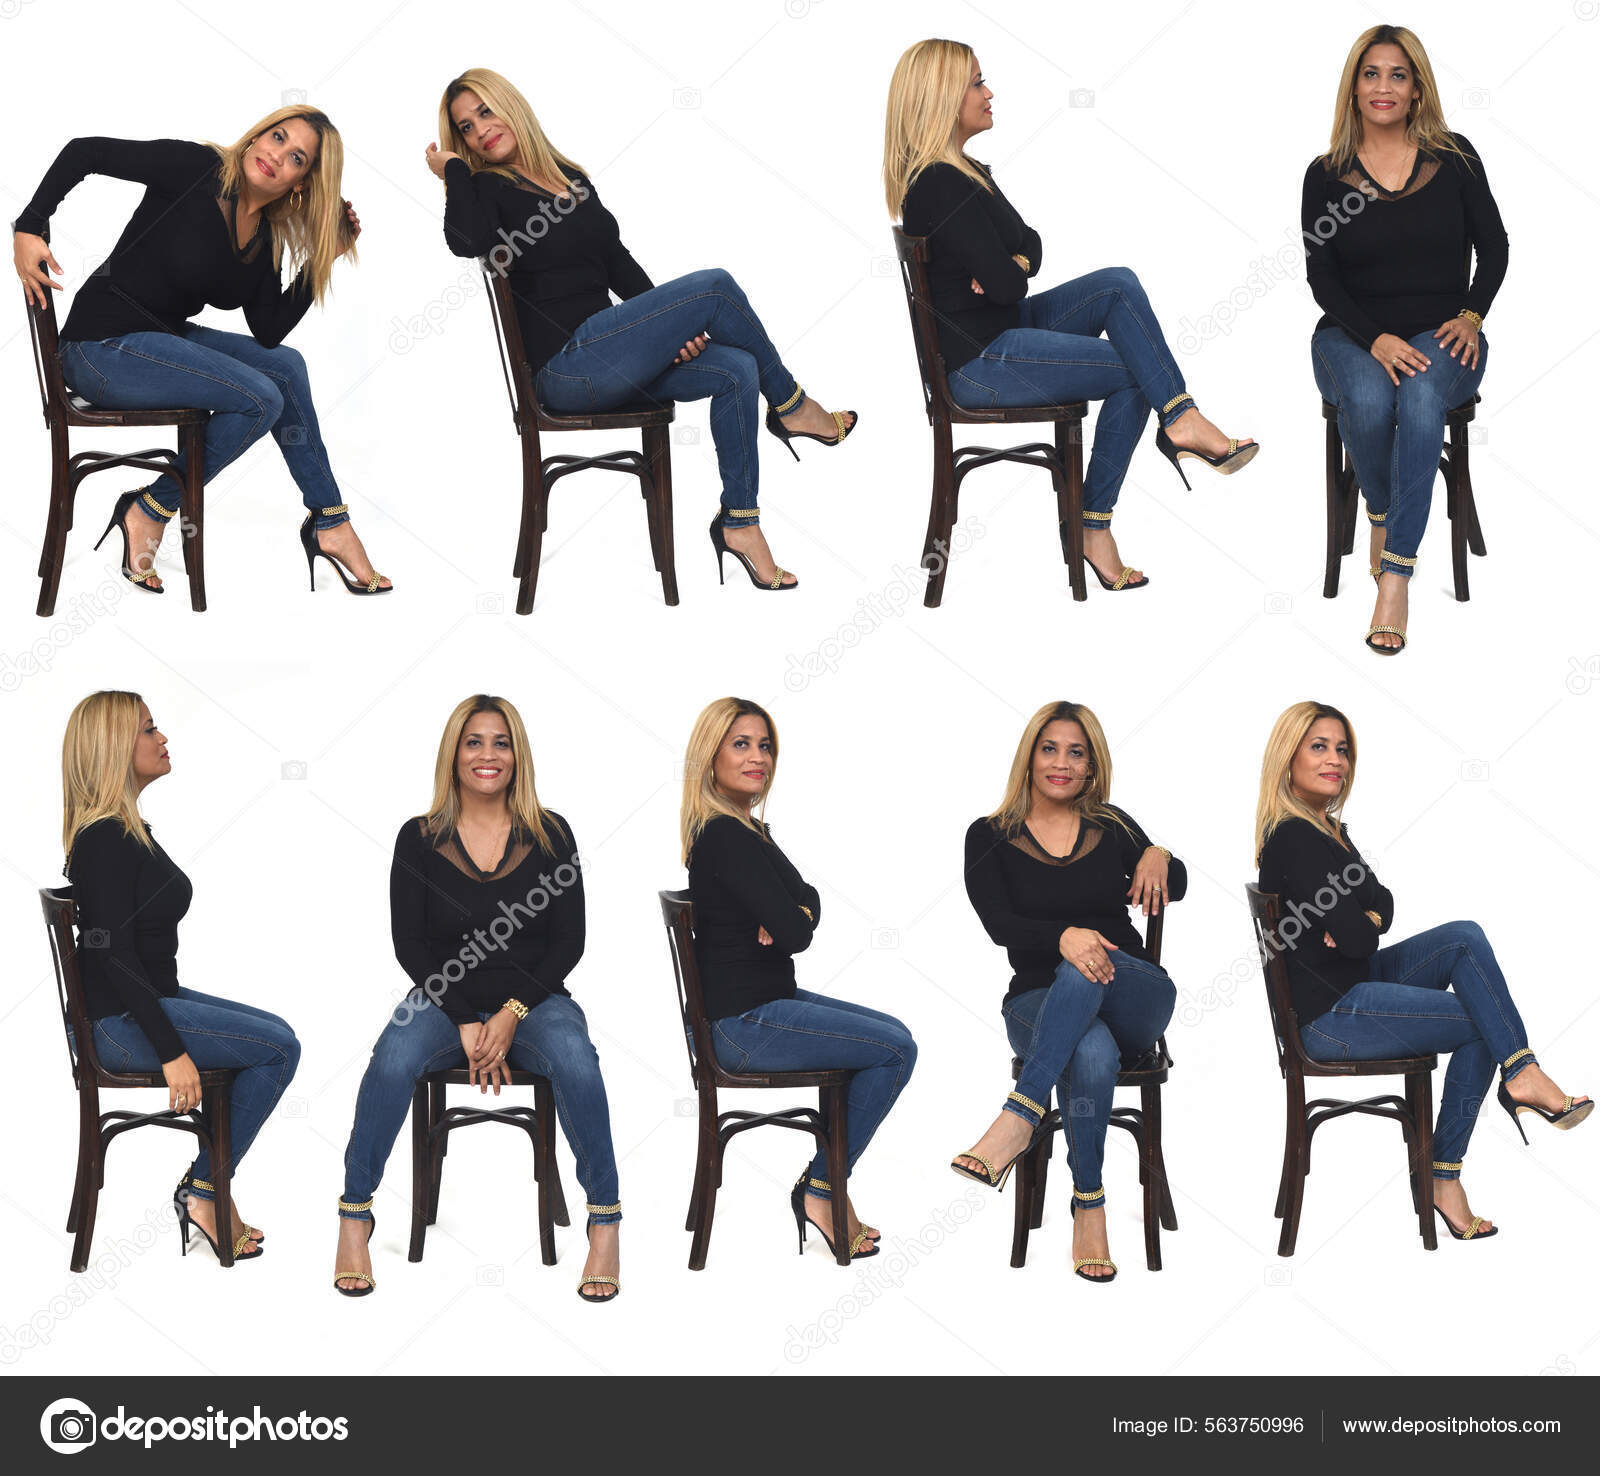 Elegant Model Sitting Chair Posing Like Stock Photo 569254786 | Shutterstock